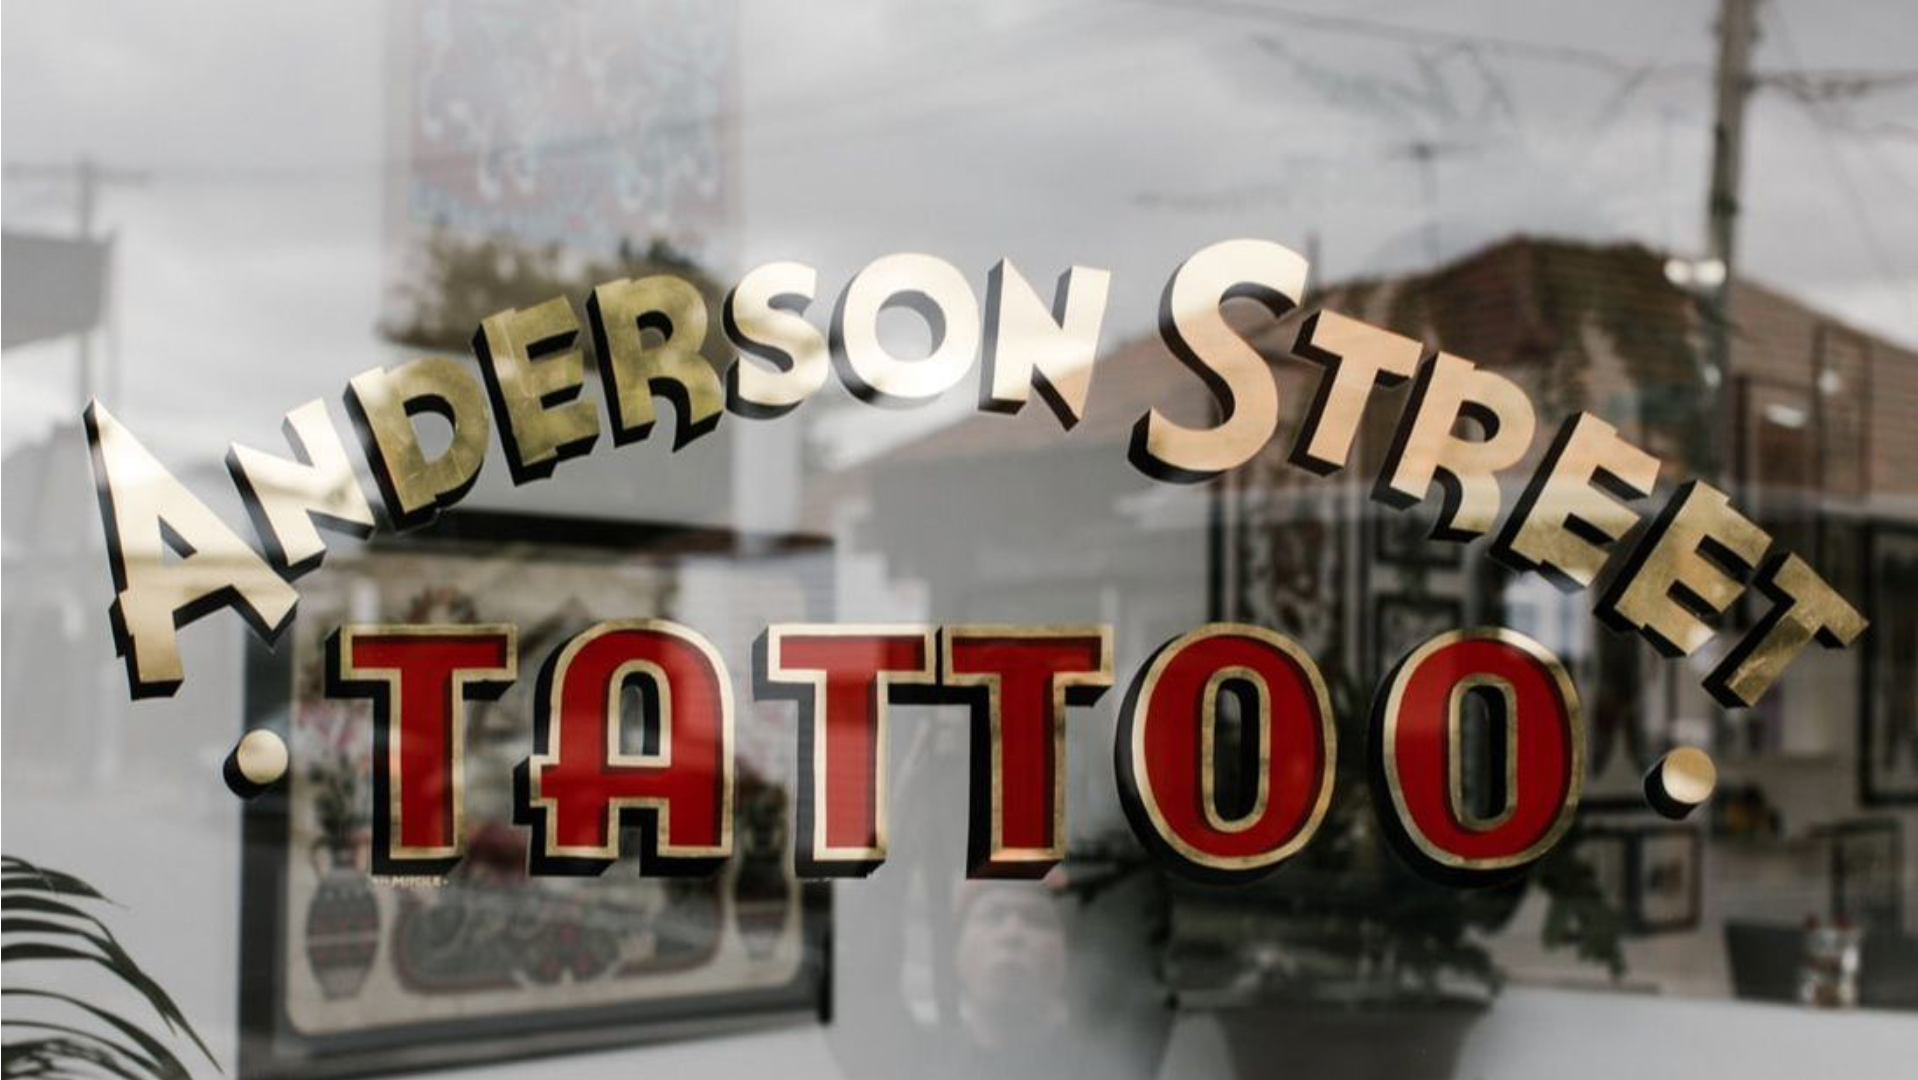 Anderson Street Tattoo